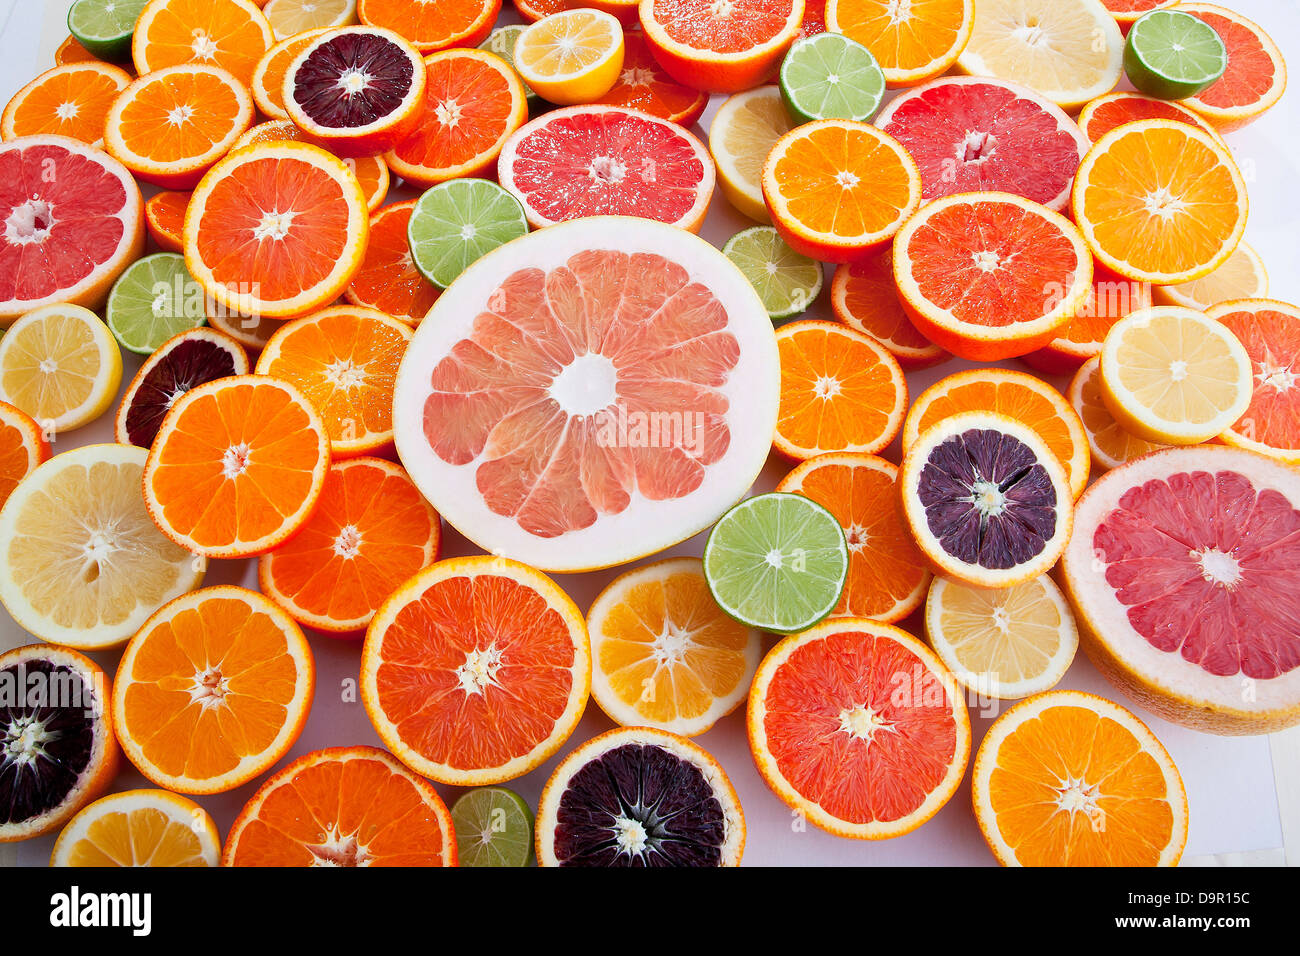 Variety Of Cut Citrus Halves Oranges Grapefruit Limes Lemons Stock Photo Alamy